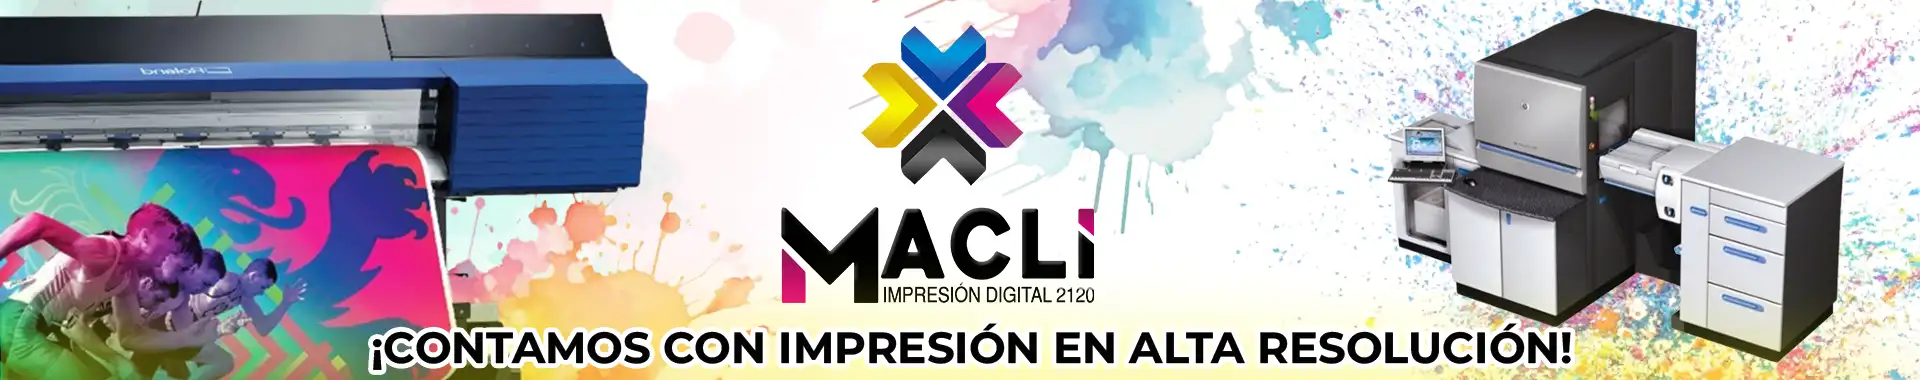 Imagen 1 del perfil de Macli Impresión Digital 2120